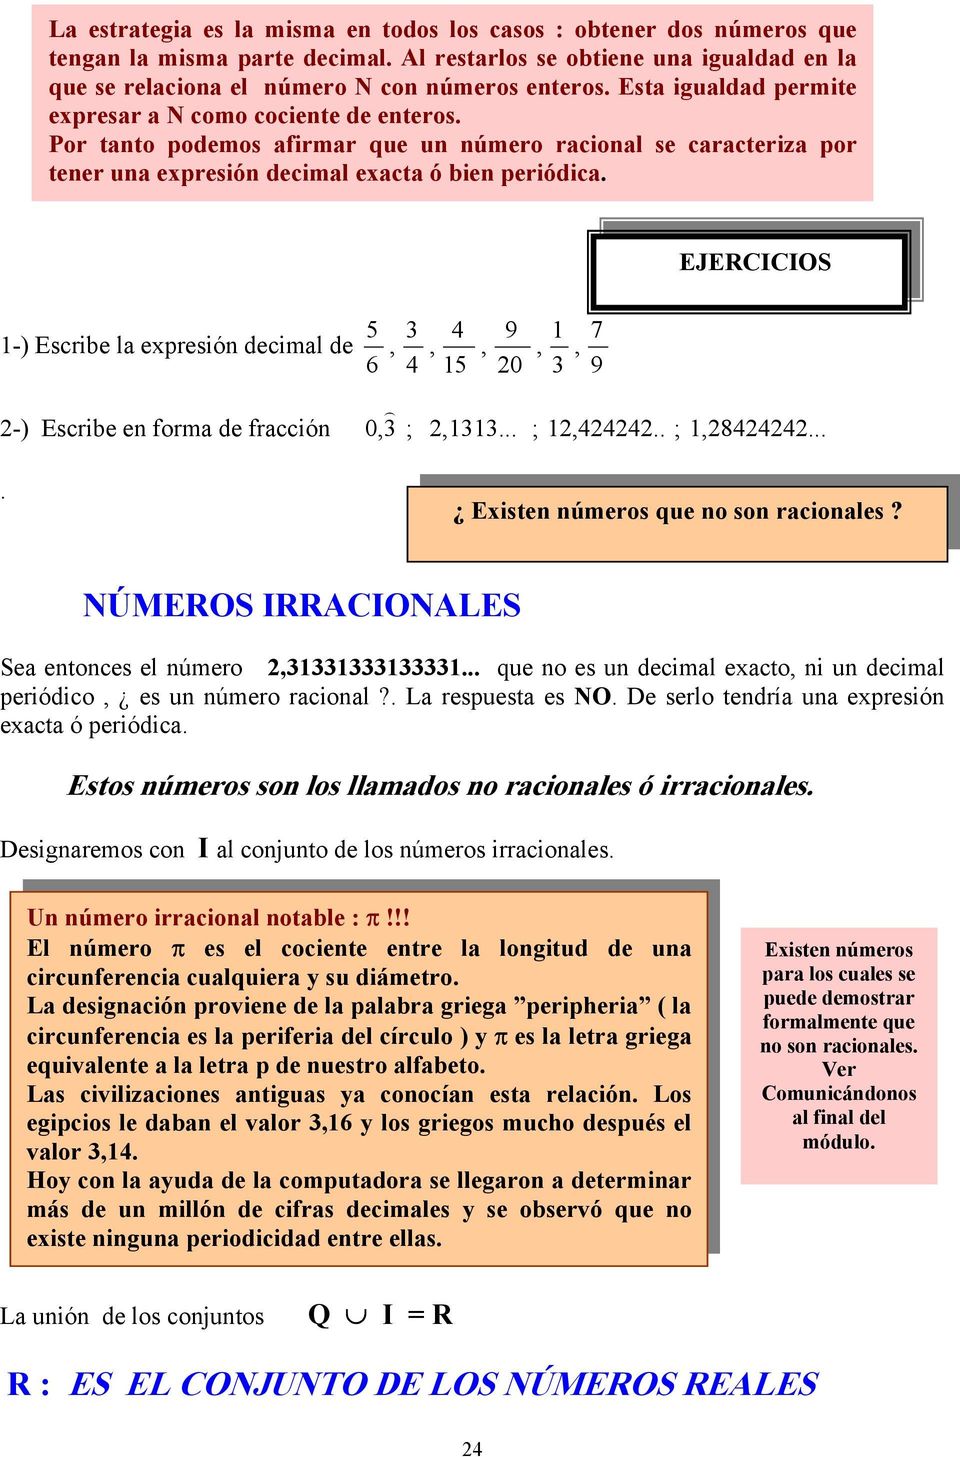 1-) Escribe la expresión decimal de 5 6 -) Escribe en forma de fracción 0 ) ; 11... ; 1.. ; 18... 15 9 0 1 7 9 EJERCICIOS. Existen números que no son racionales?